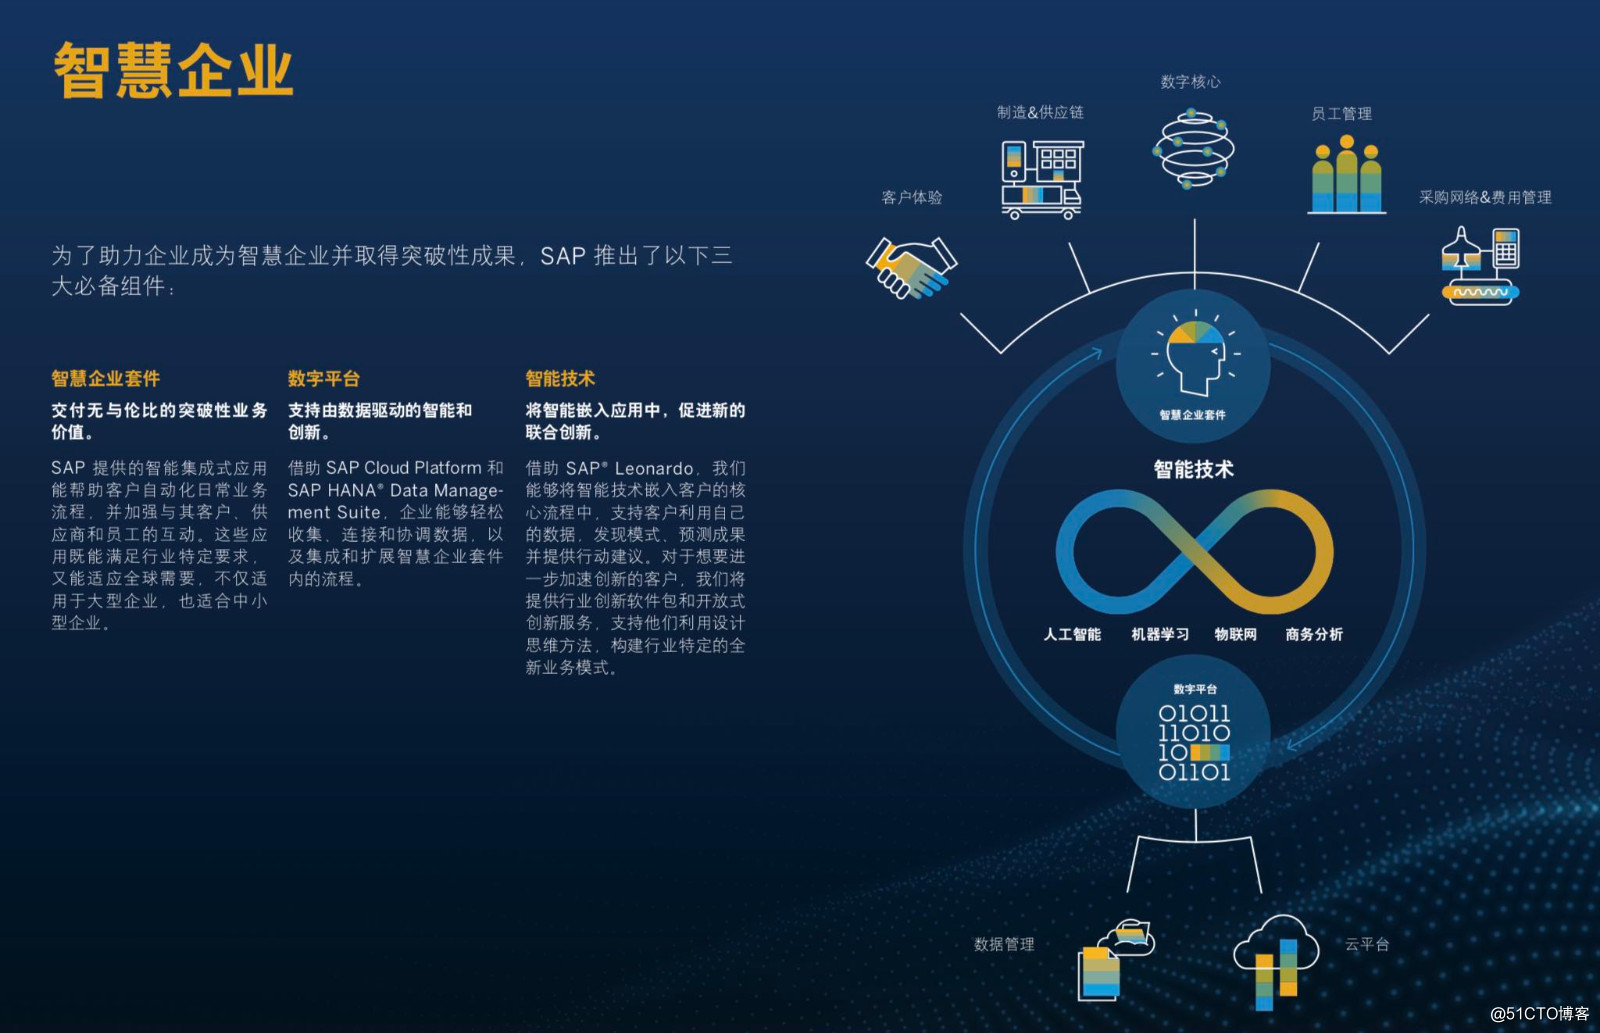 當SAP遇上馬雲，智慧企業加速中國數字化轉型